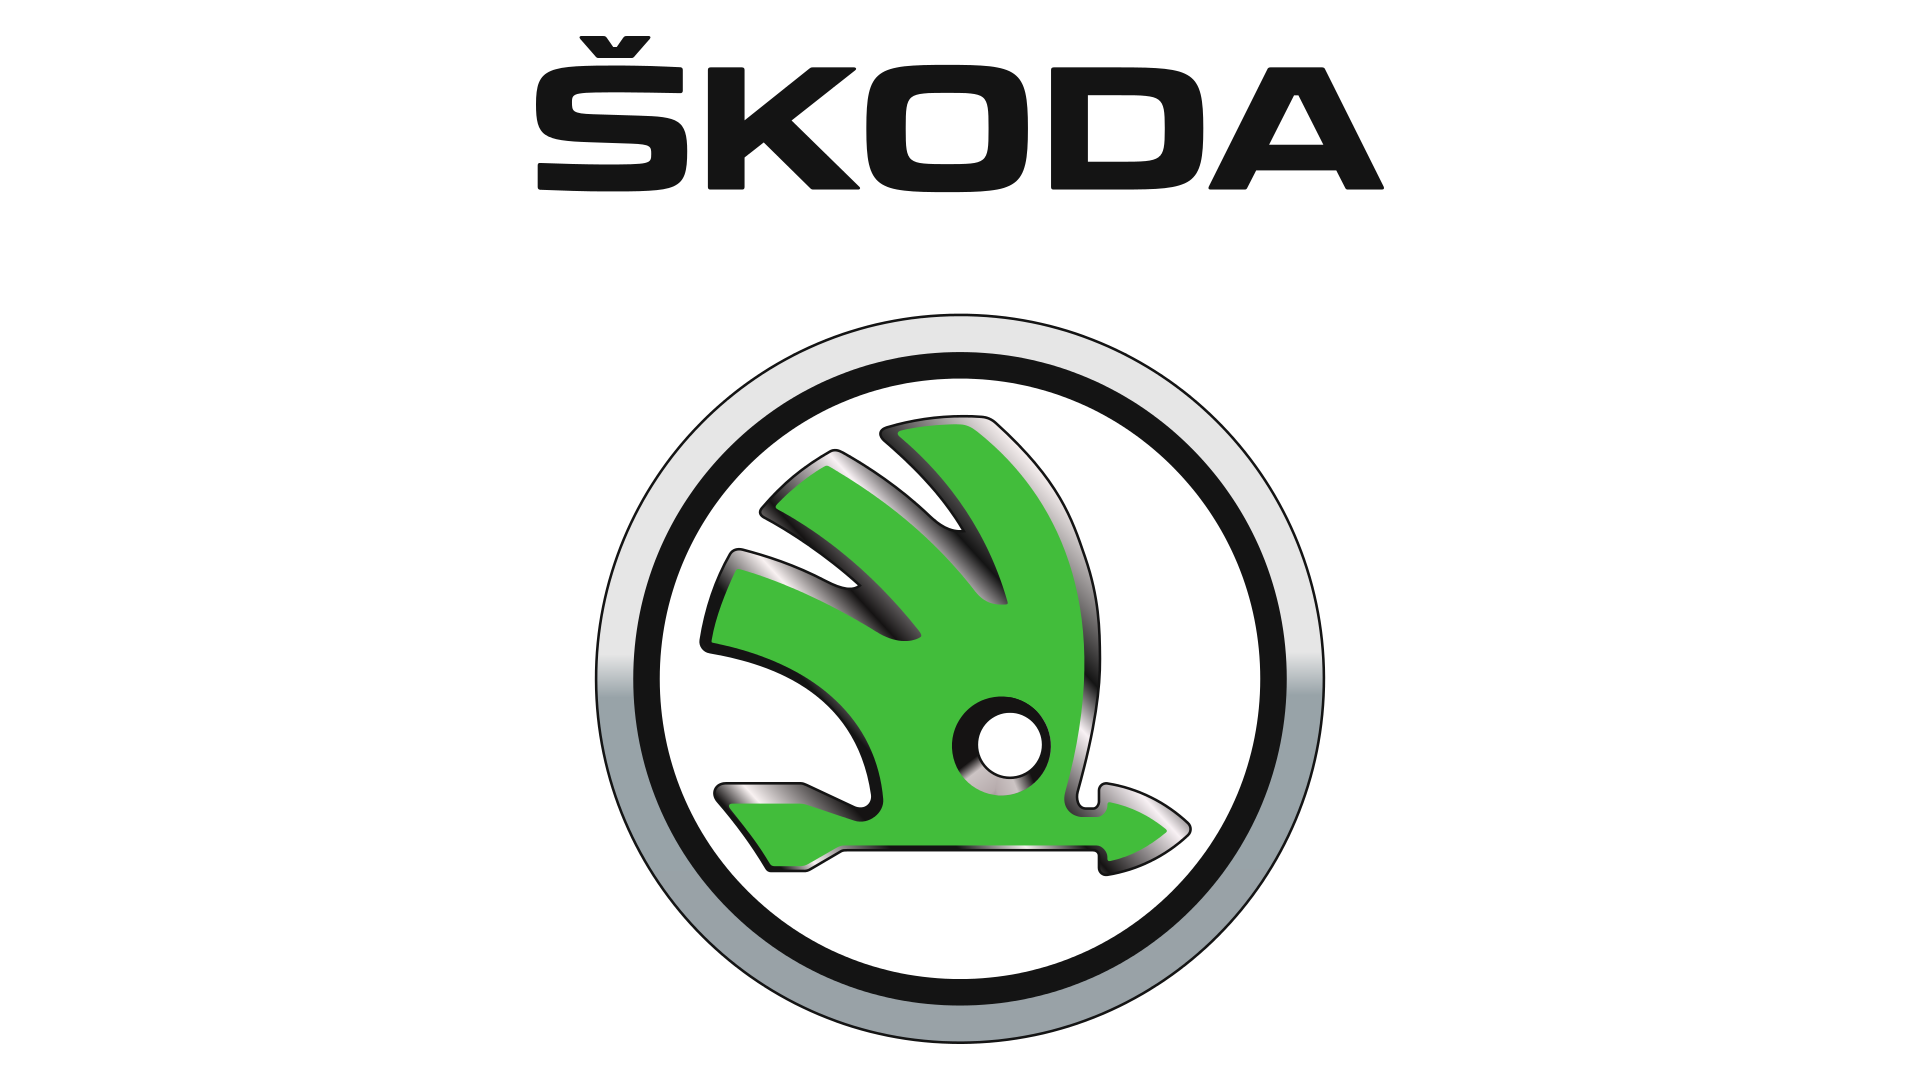 Škoda Logo, Hd Png, Meaning, Information, Skoda Logo PNG - Free PNG